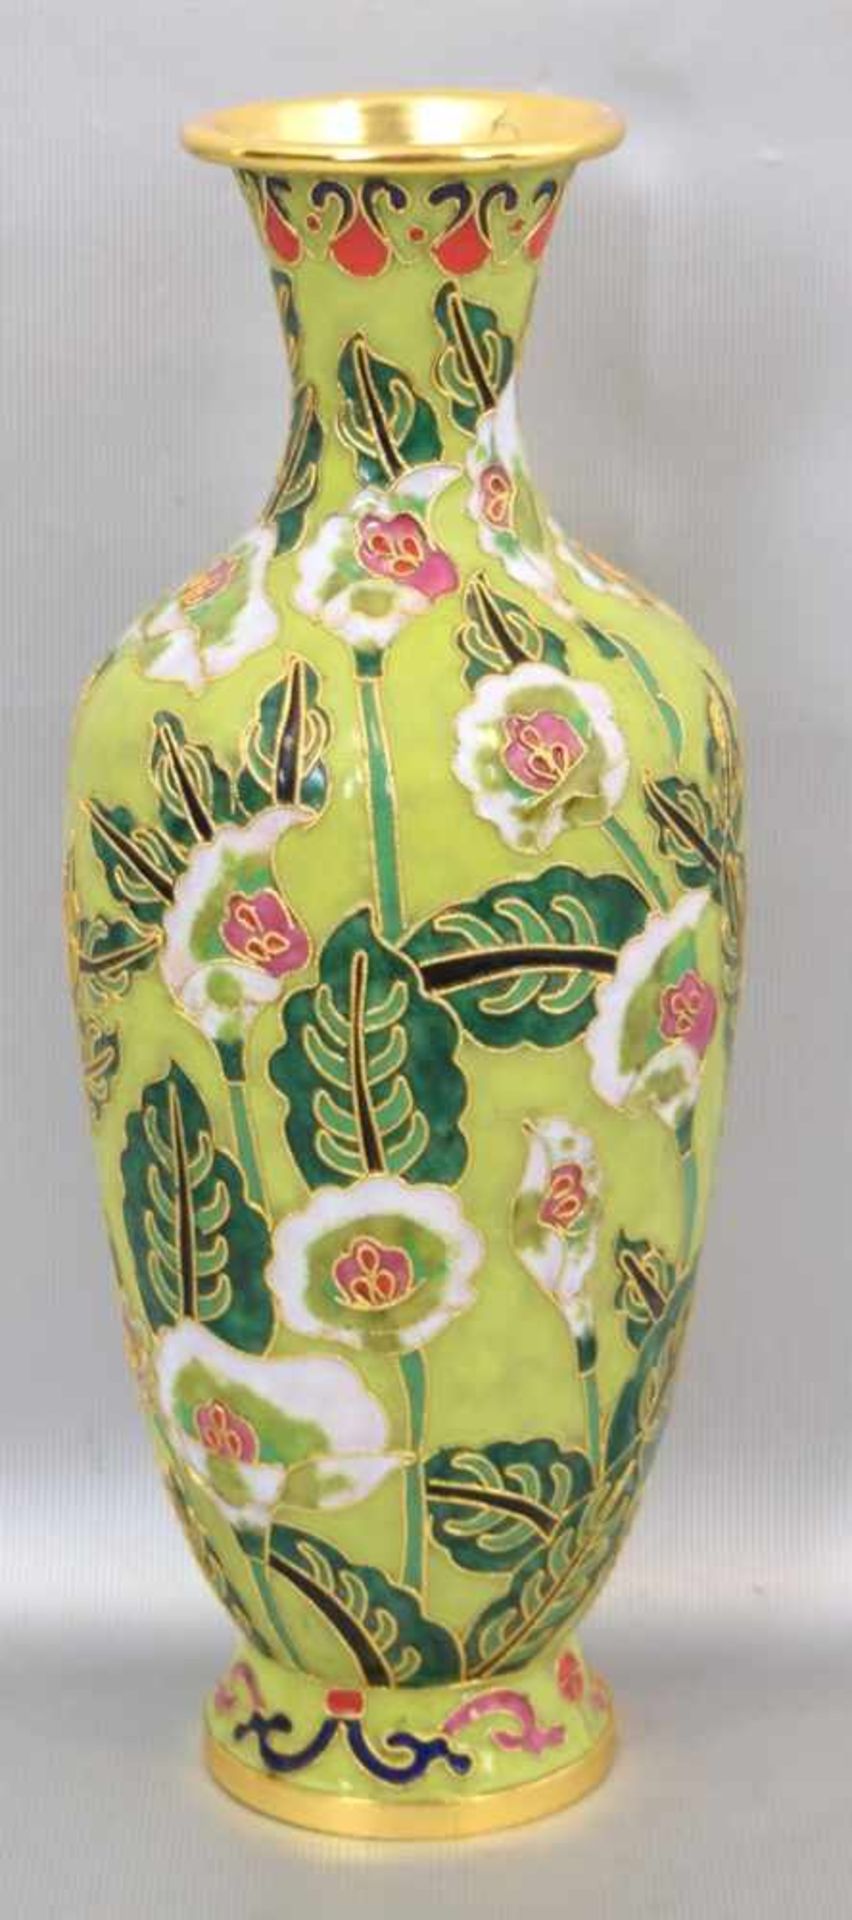 Cloisonne-VaseMessing, grüne Wandung, mit bunten Blüten verziert, H 25 cm